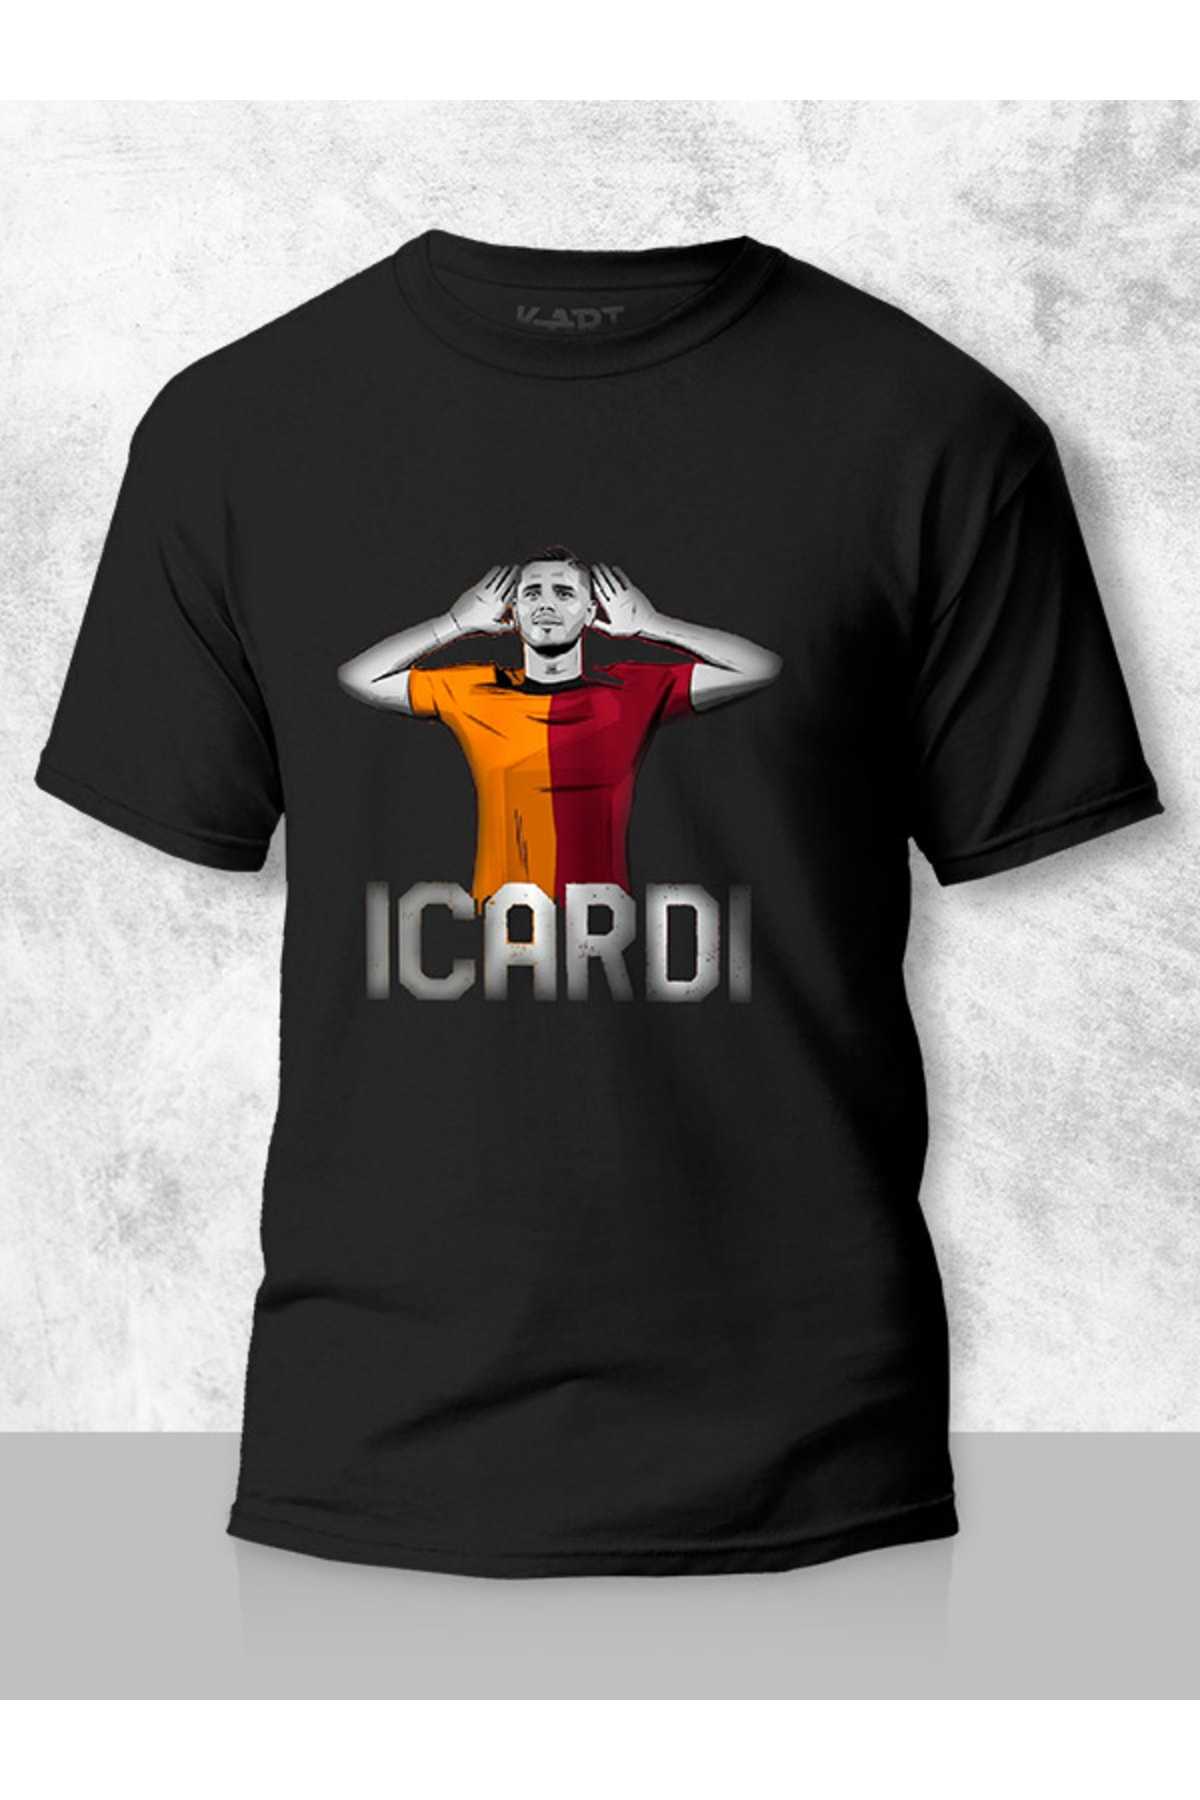 Tişört Baskı Baskılı Tişört, Mauro Icardi Gol Sevinmesi Tasarımlı Unisex Kişiye Özel Tişört Siyah Ve Beyaz